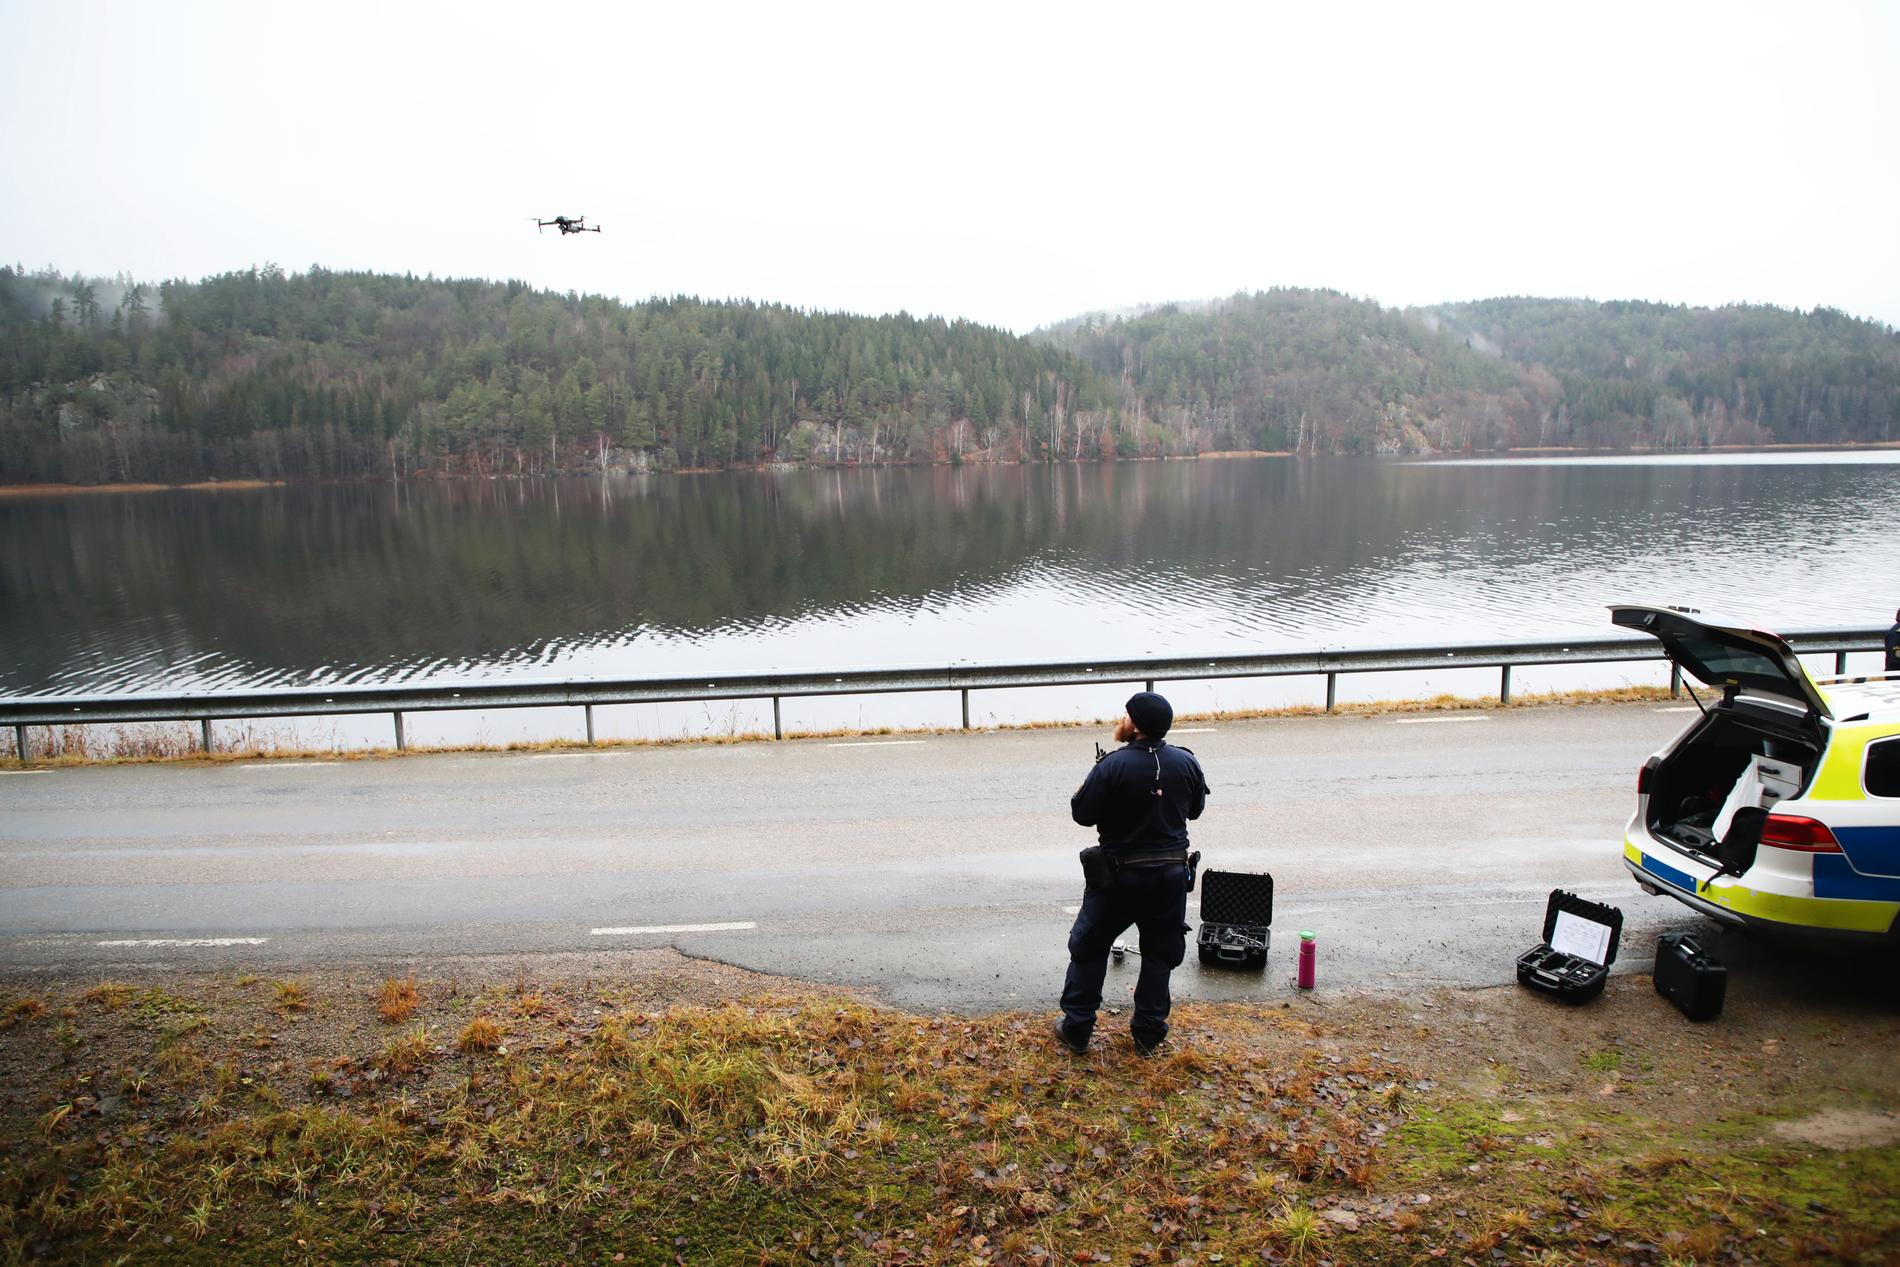 Sökandet efter den försvunna 17-åriga flickan i Uddevalla går nu in på sitt tolfte dygn. Arkivbild.